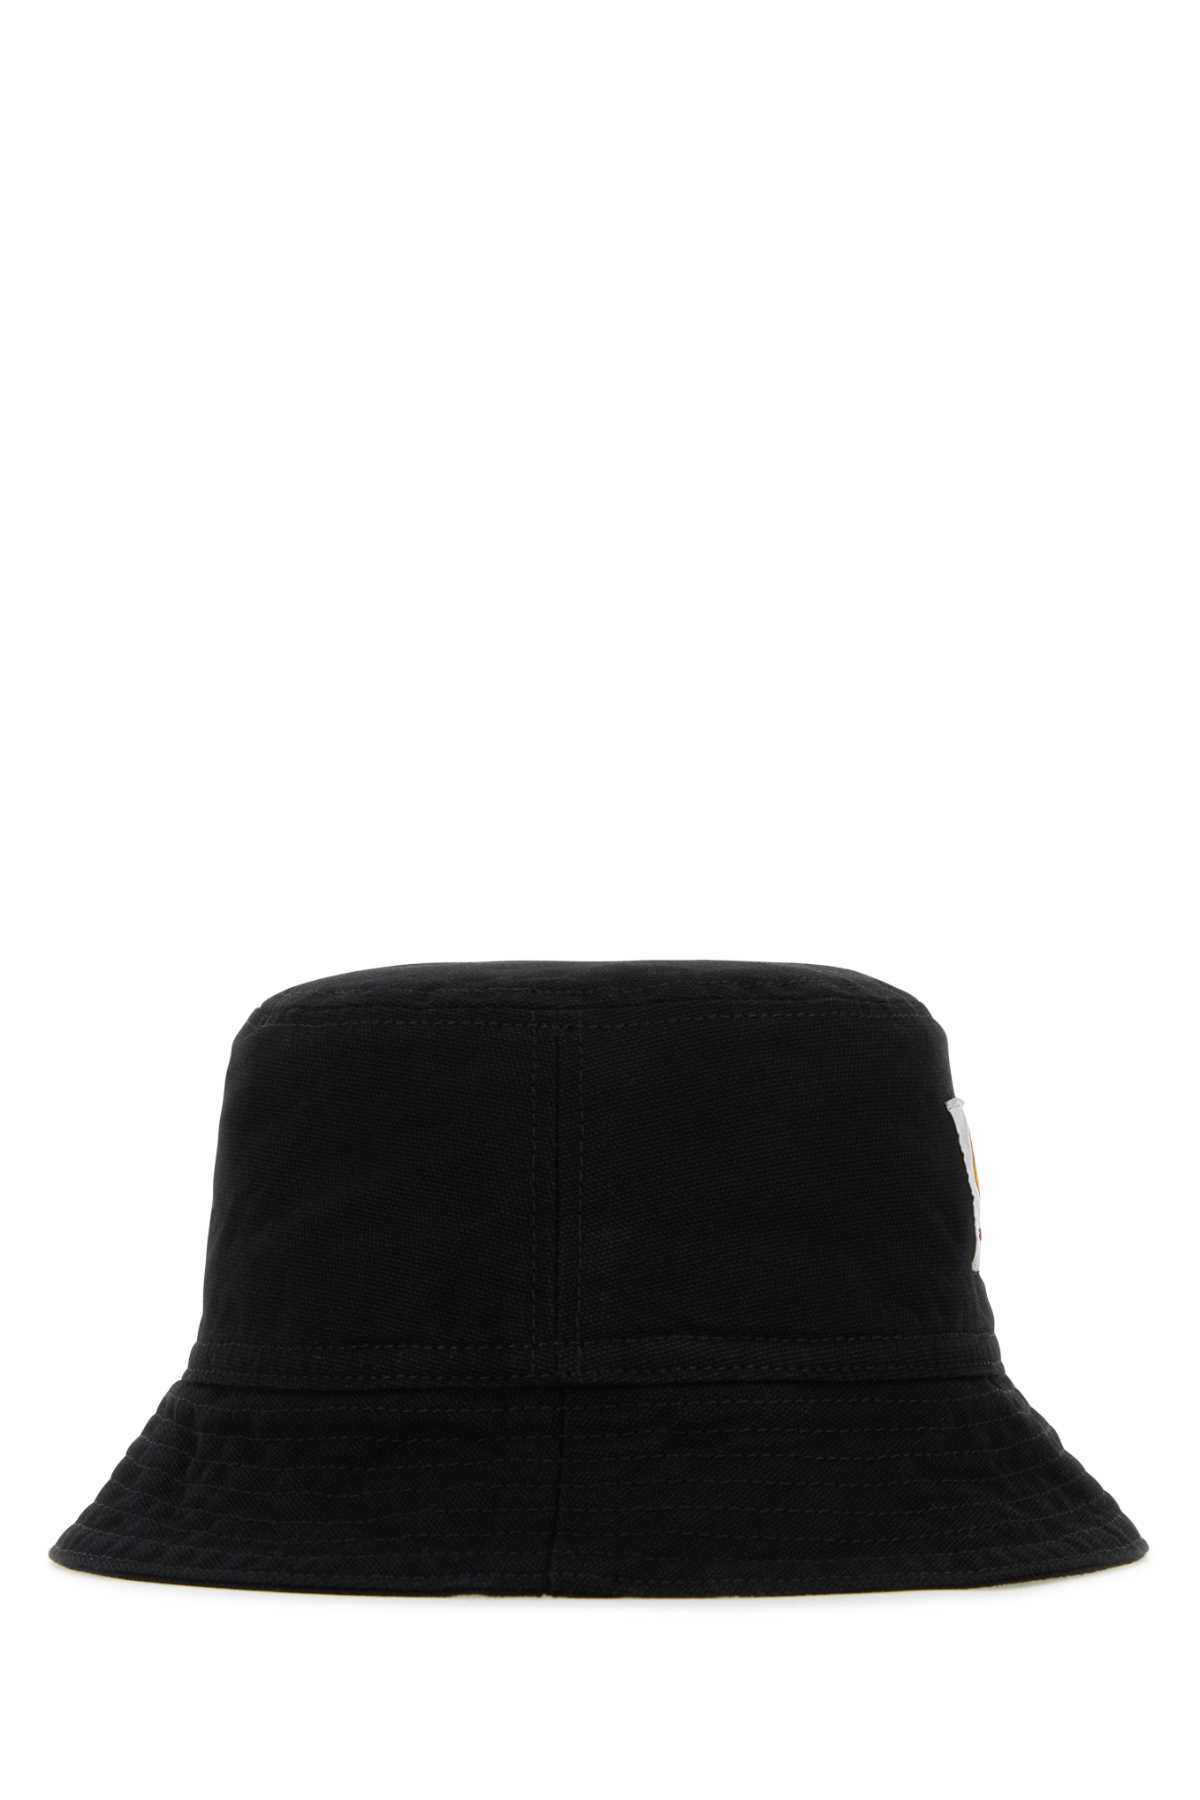 Carhartt Black Cotton Bayfield Bucket Hat In Blk